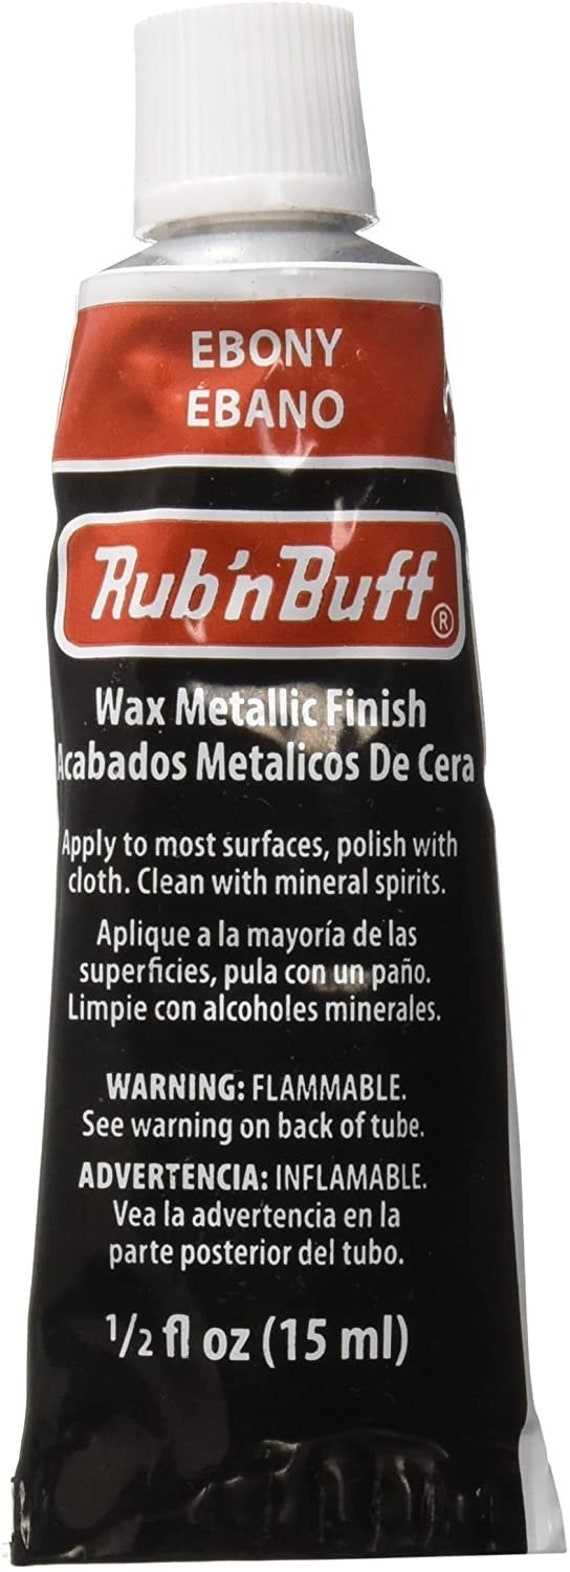 Amaco Rub 'N Buff Wax Metallic Finish, Ebony, 0.5-Fluid Ounce 